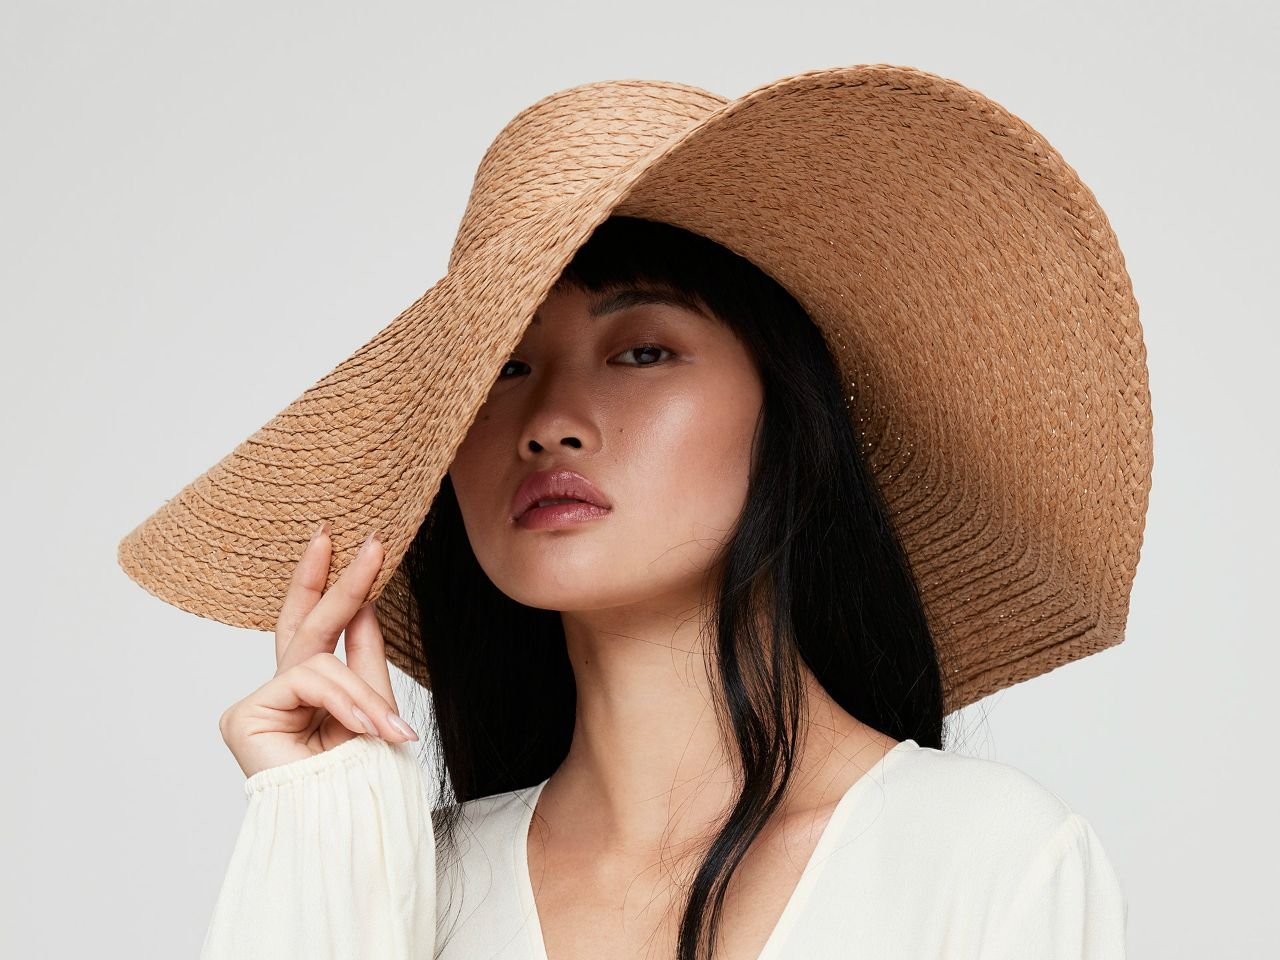 Шляпа это. Китайская шляпа. Шляпа китайца. Шляпа Эстетика. Эстетика женской шляпы.